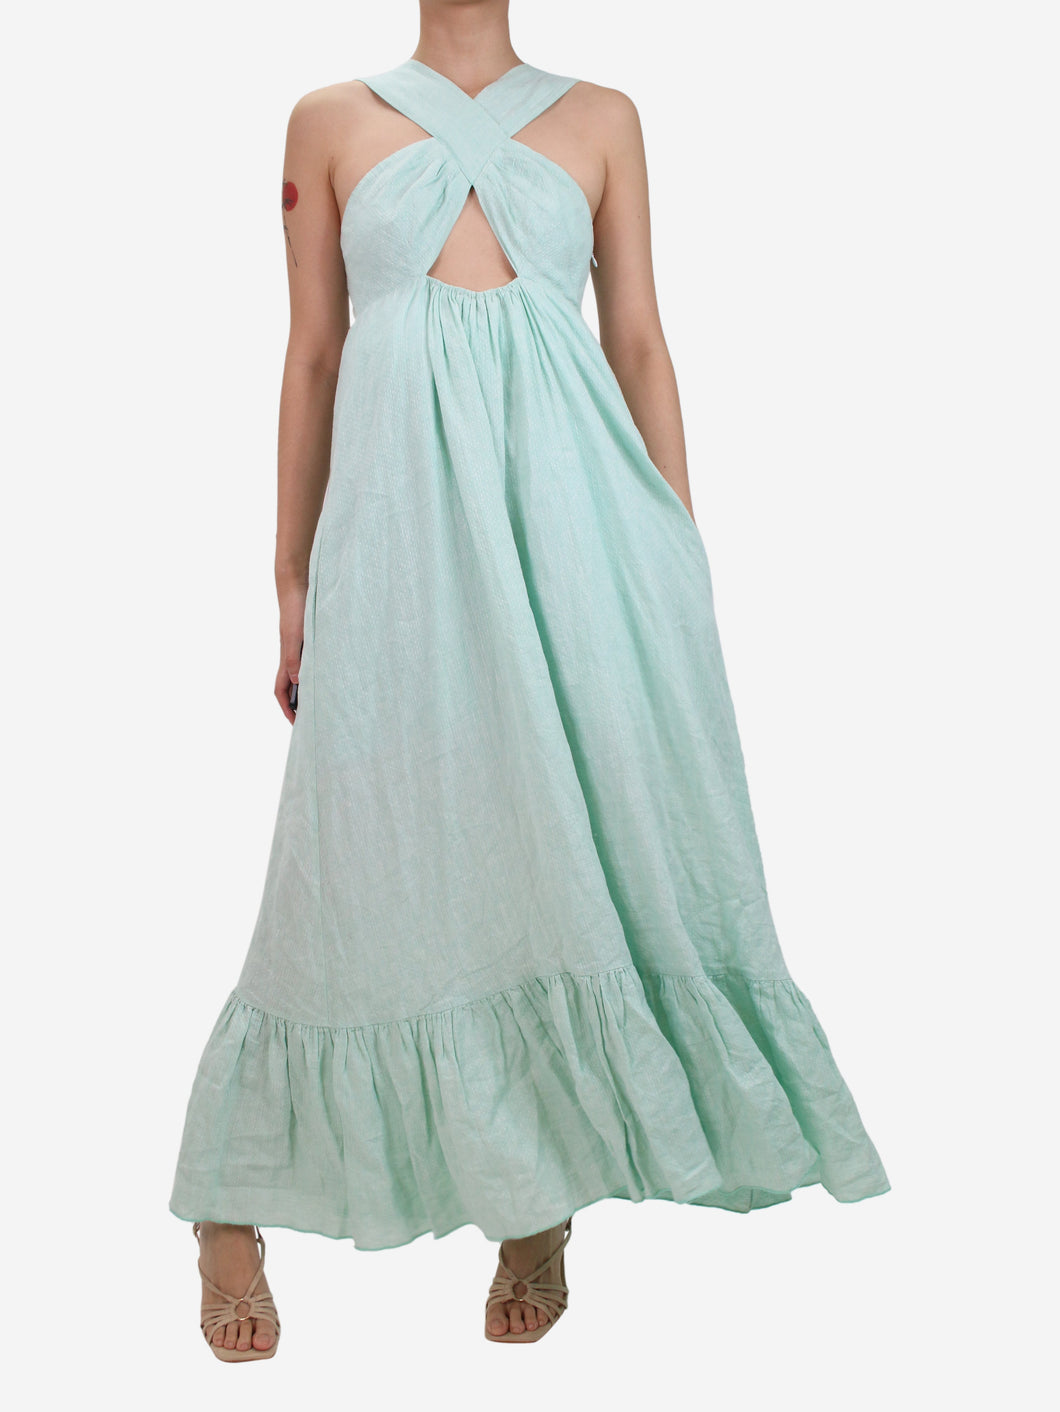 Green halter neck linen dress - size S Dresses Gul Hurgel 